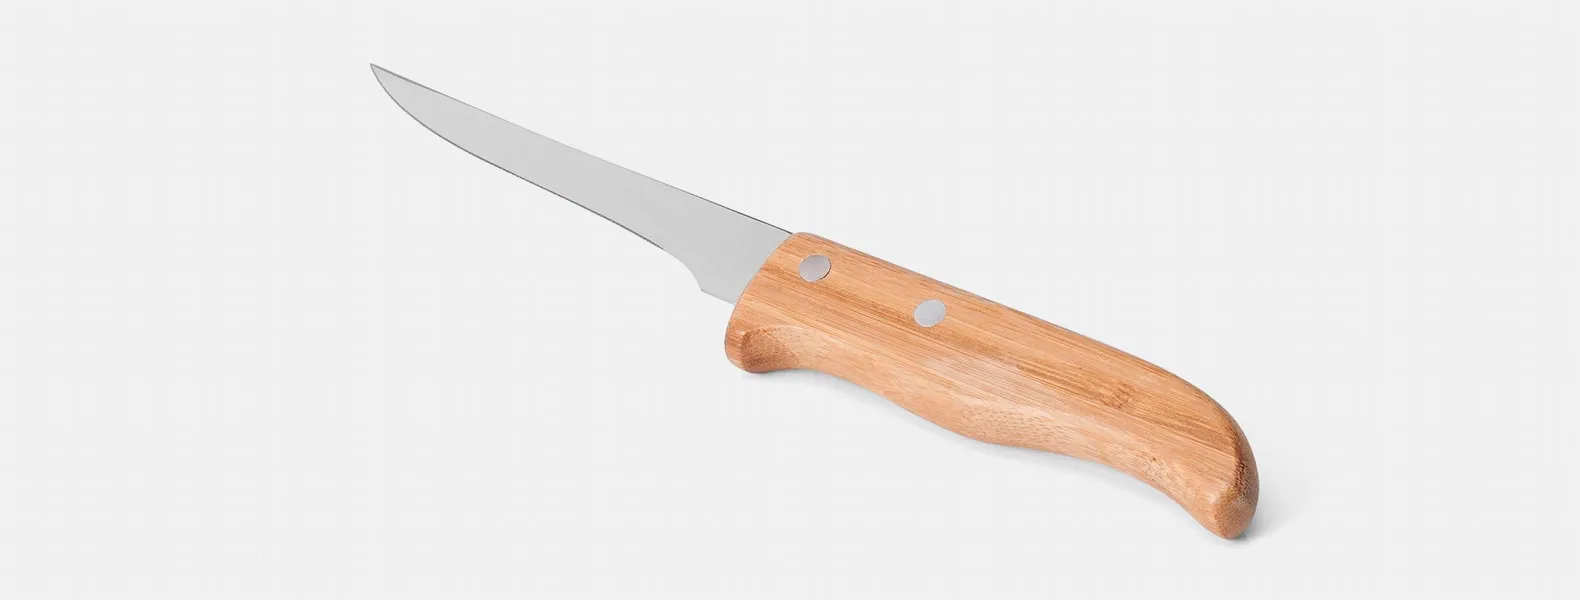 Kit composto por seis peças com cabos em bambu e lâminas em aço Inox com rebites resistentes, sendo uma faca 8”, um garfo trinchante, uma faca 5” para desossar, uma chaira 8”, uma faca Santoku 7” e uma faca 7” para pão. Estão organizados em fita elástica preta no interior de um estojo.